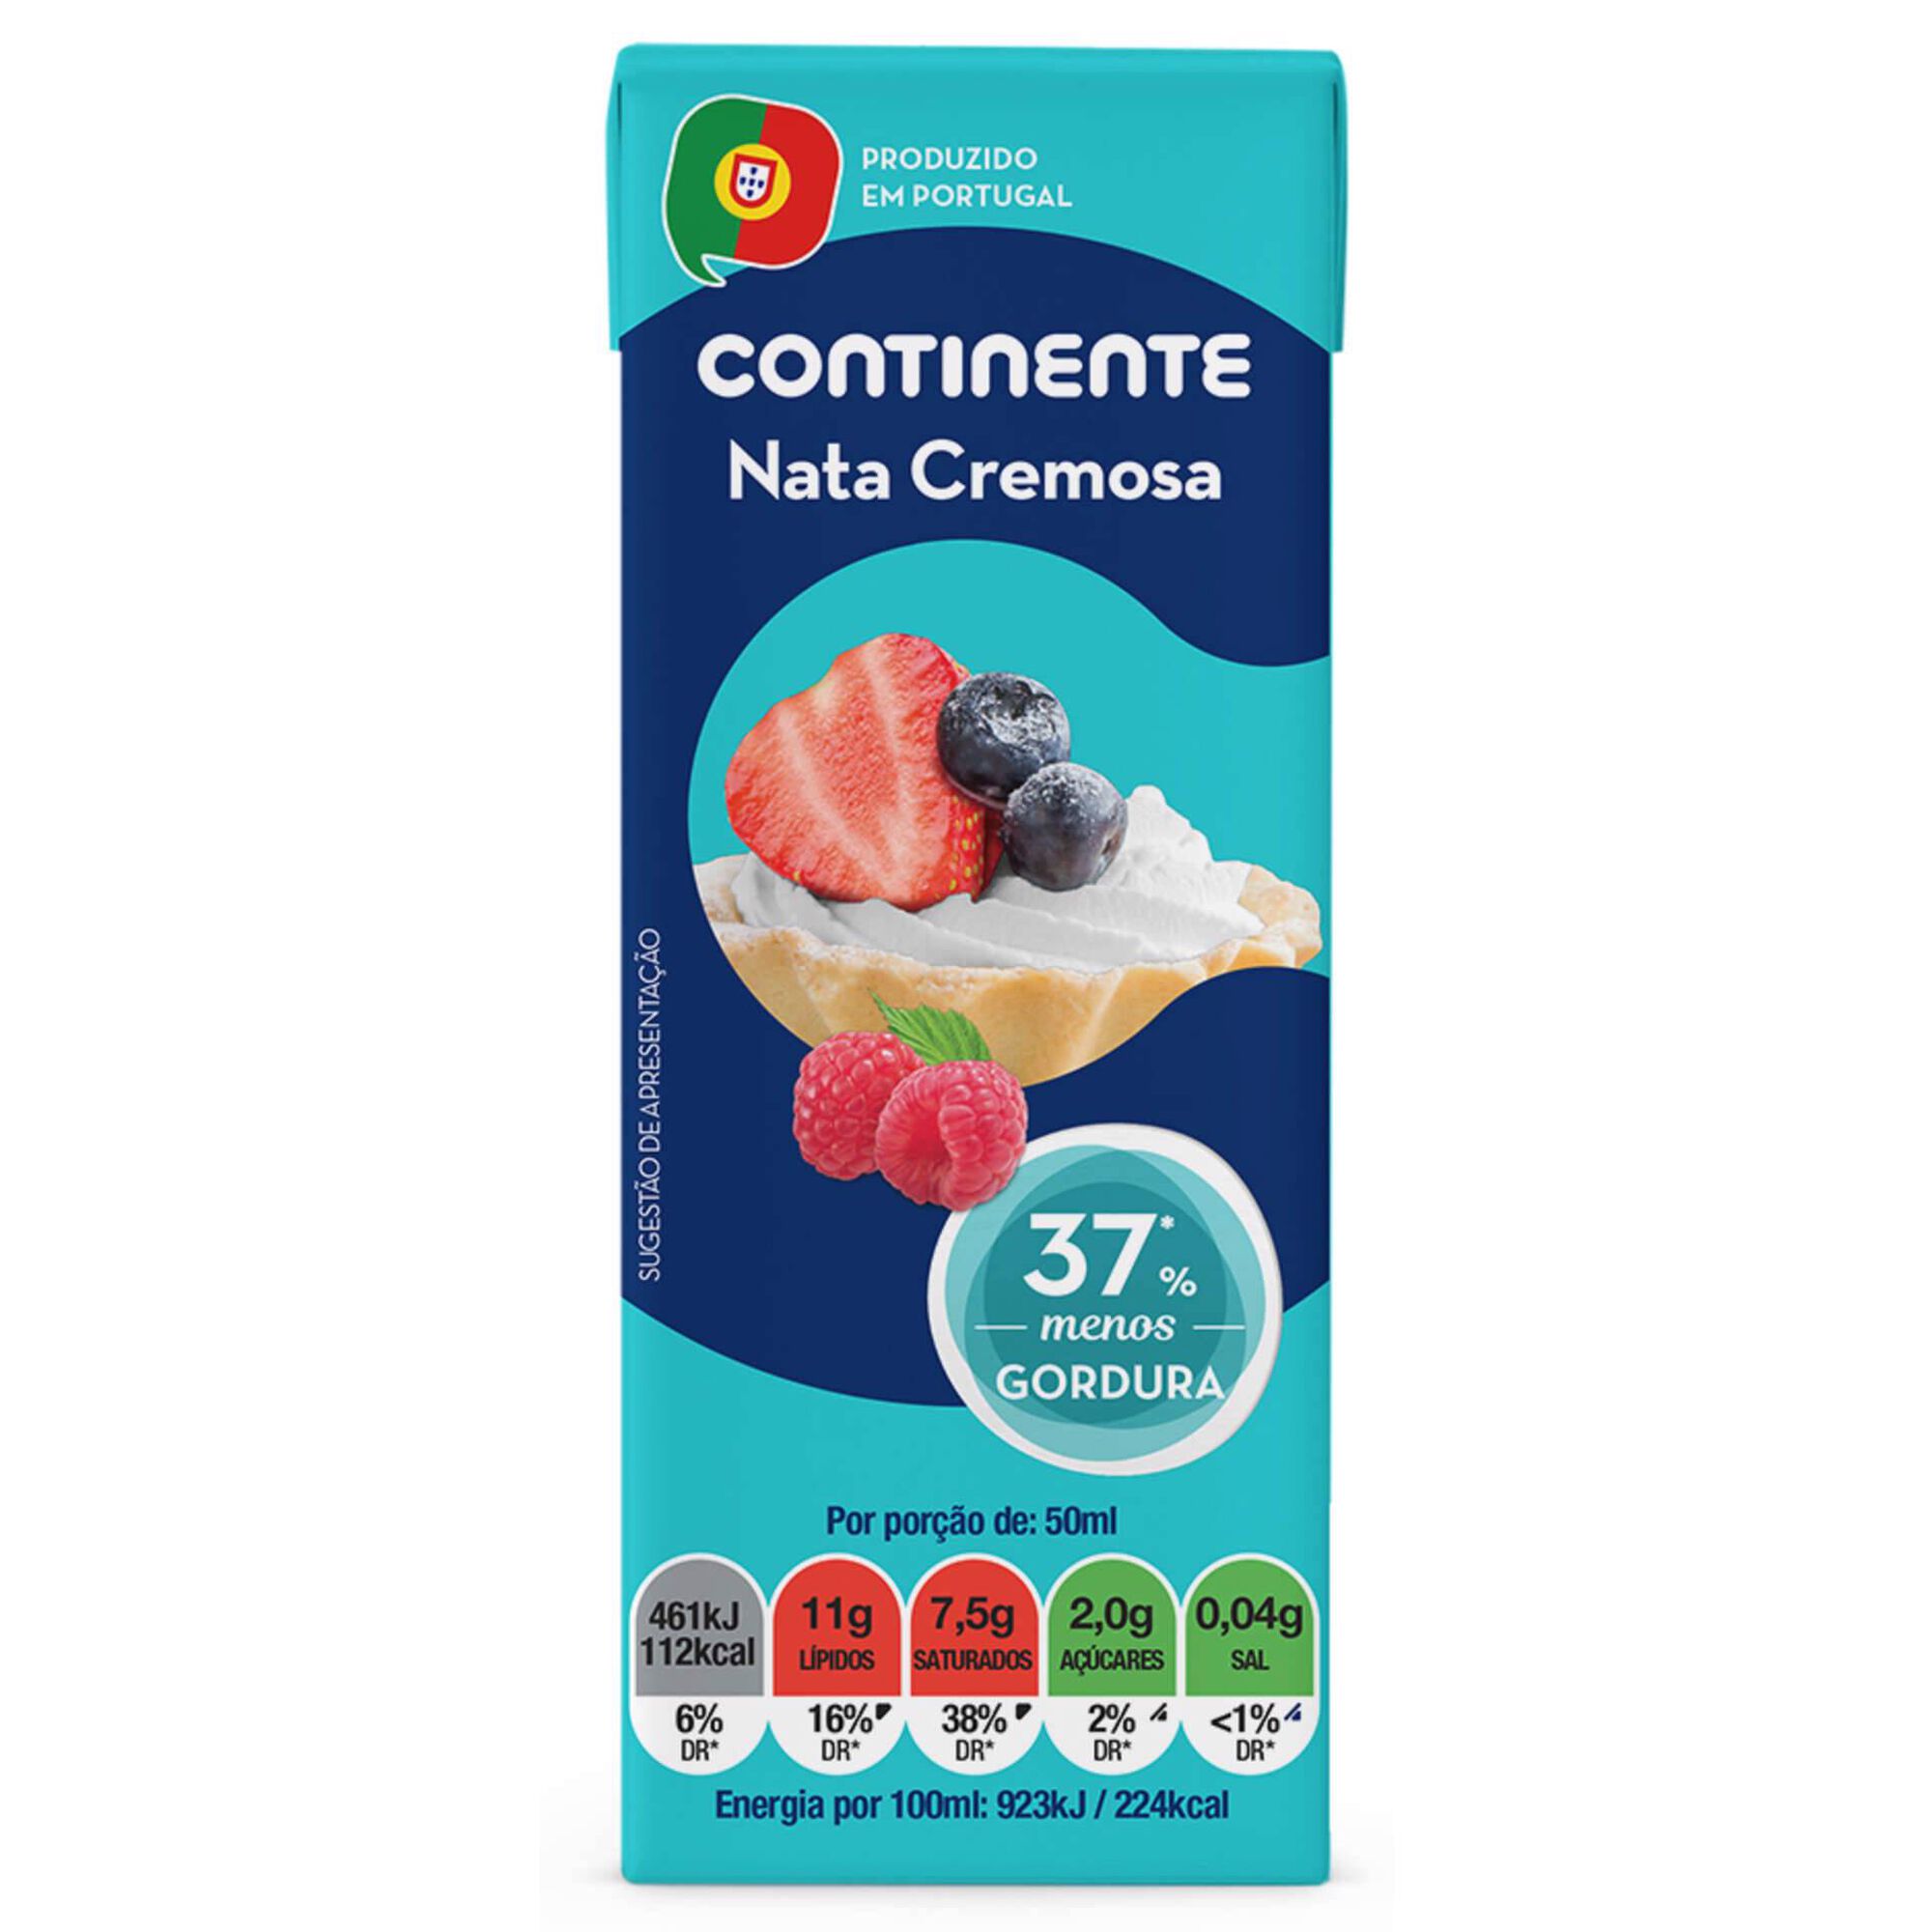 Natas UHT Cremosas -37% Gordura